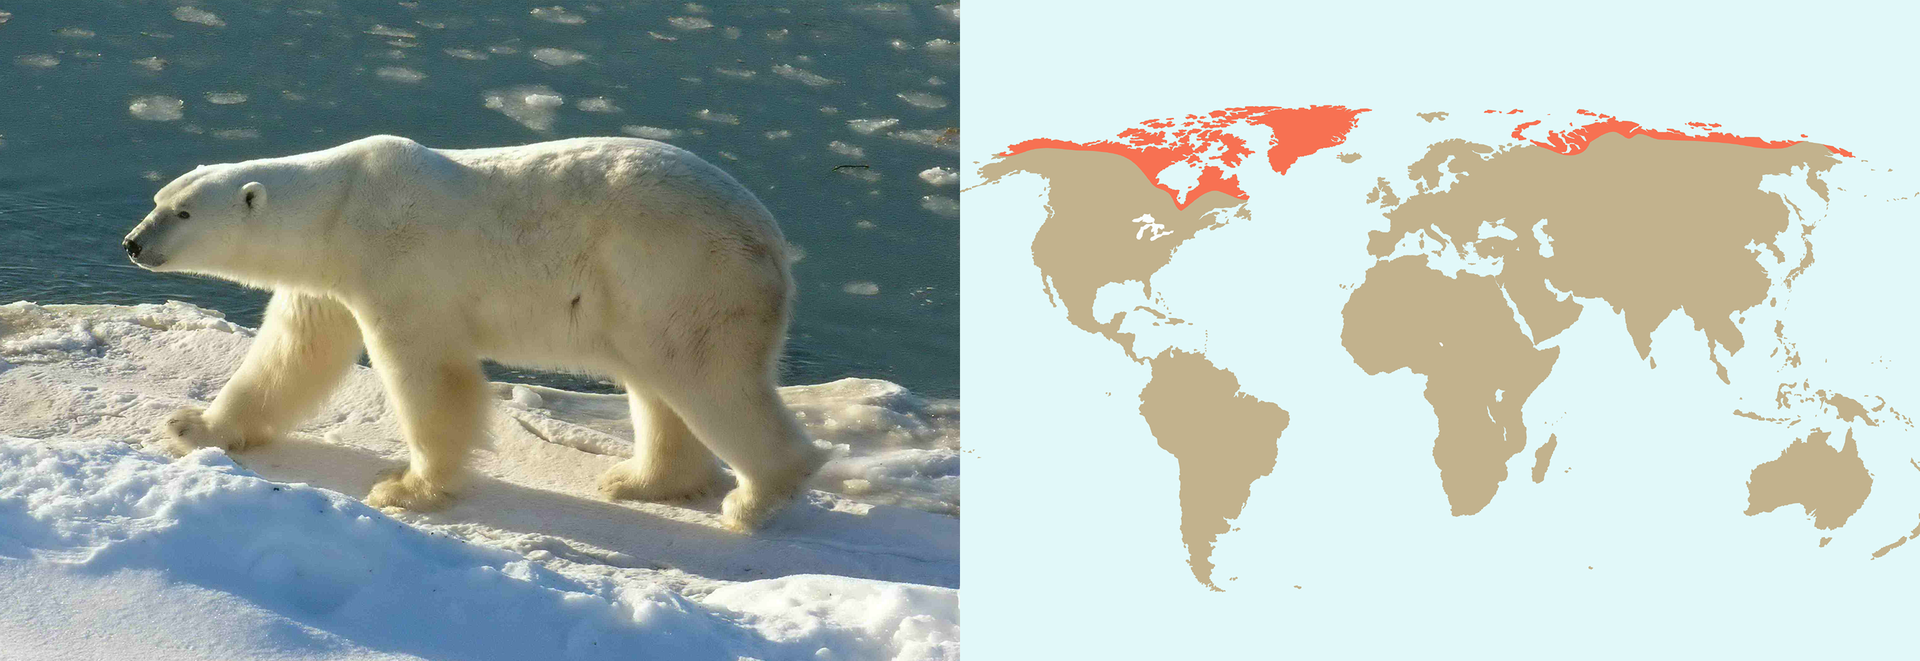 Ilustracja z lewej przestawia fotografie idącego po śniegu białego niedźwiedzia polarnego. Obok krawędź kry i woda. Niedźwiedź jest duży, na wysokich łapach, głowa w lewo. Z prawej mapa przedstawiająca rozmieszczenie gatunku w Arktyce, za kołem podbiegunowym. To największy z niedźwiedzi.